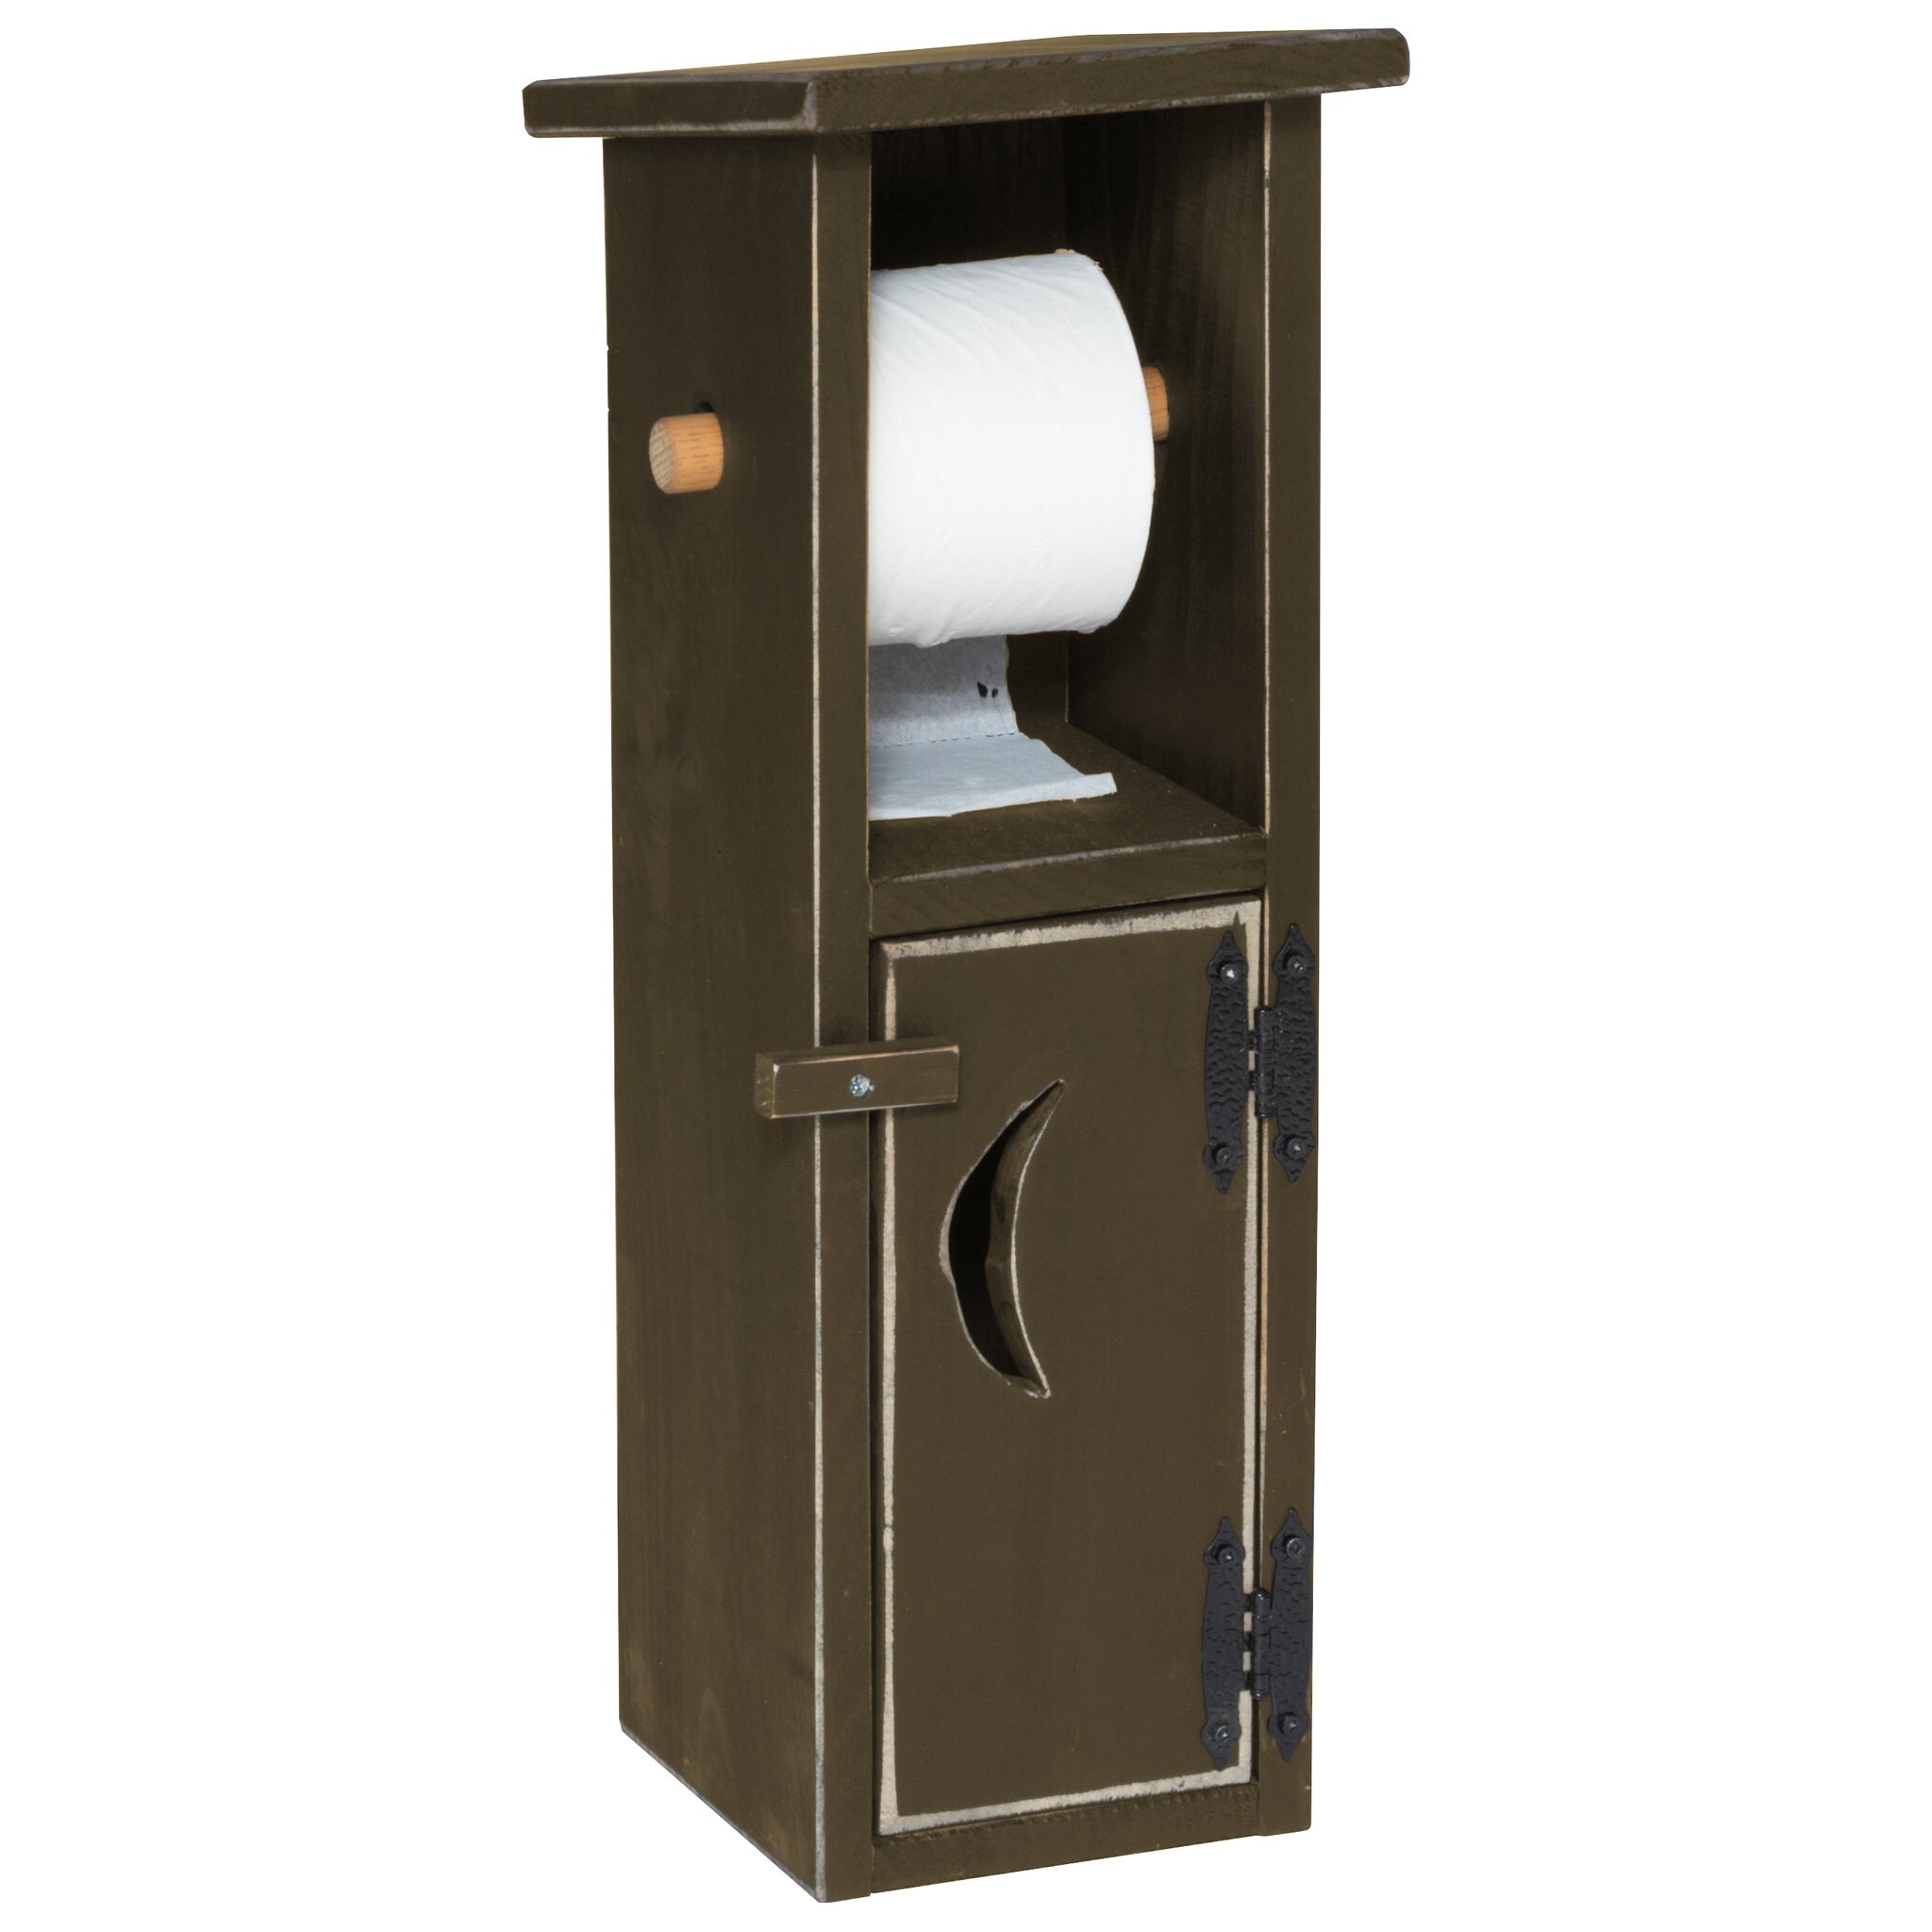 Pine Lodge Toilet Tissue Holder 8599-614